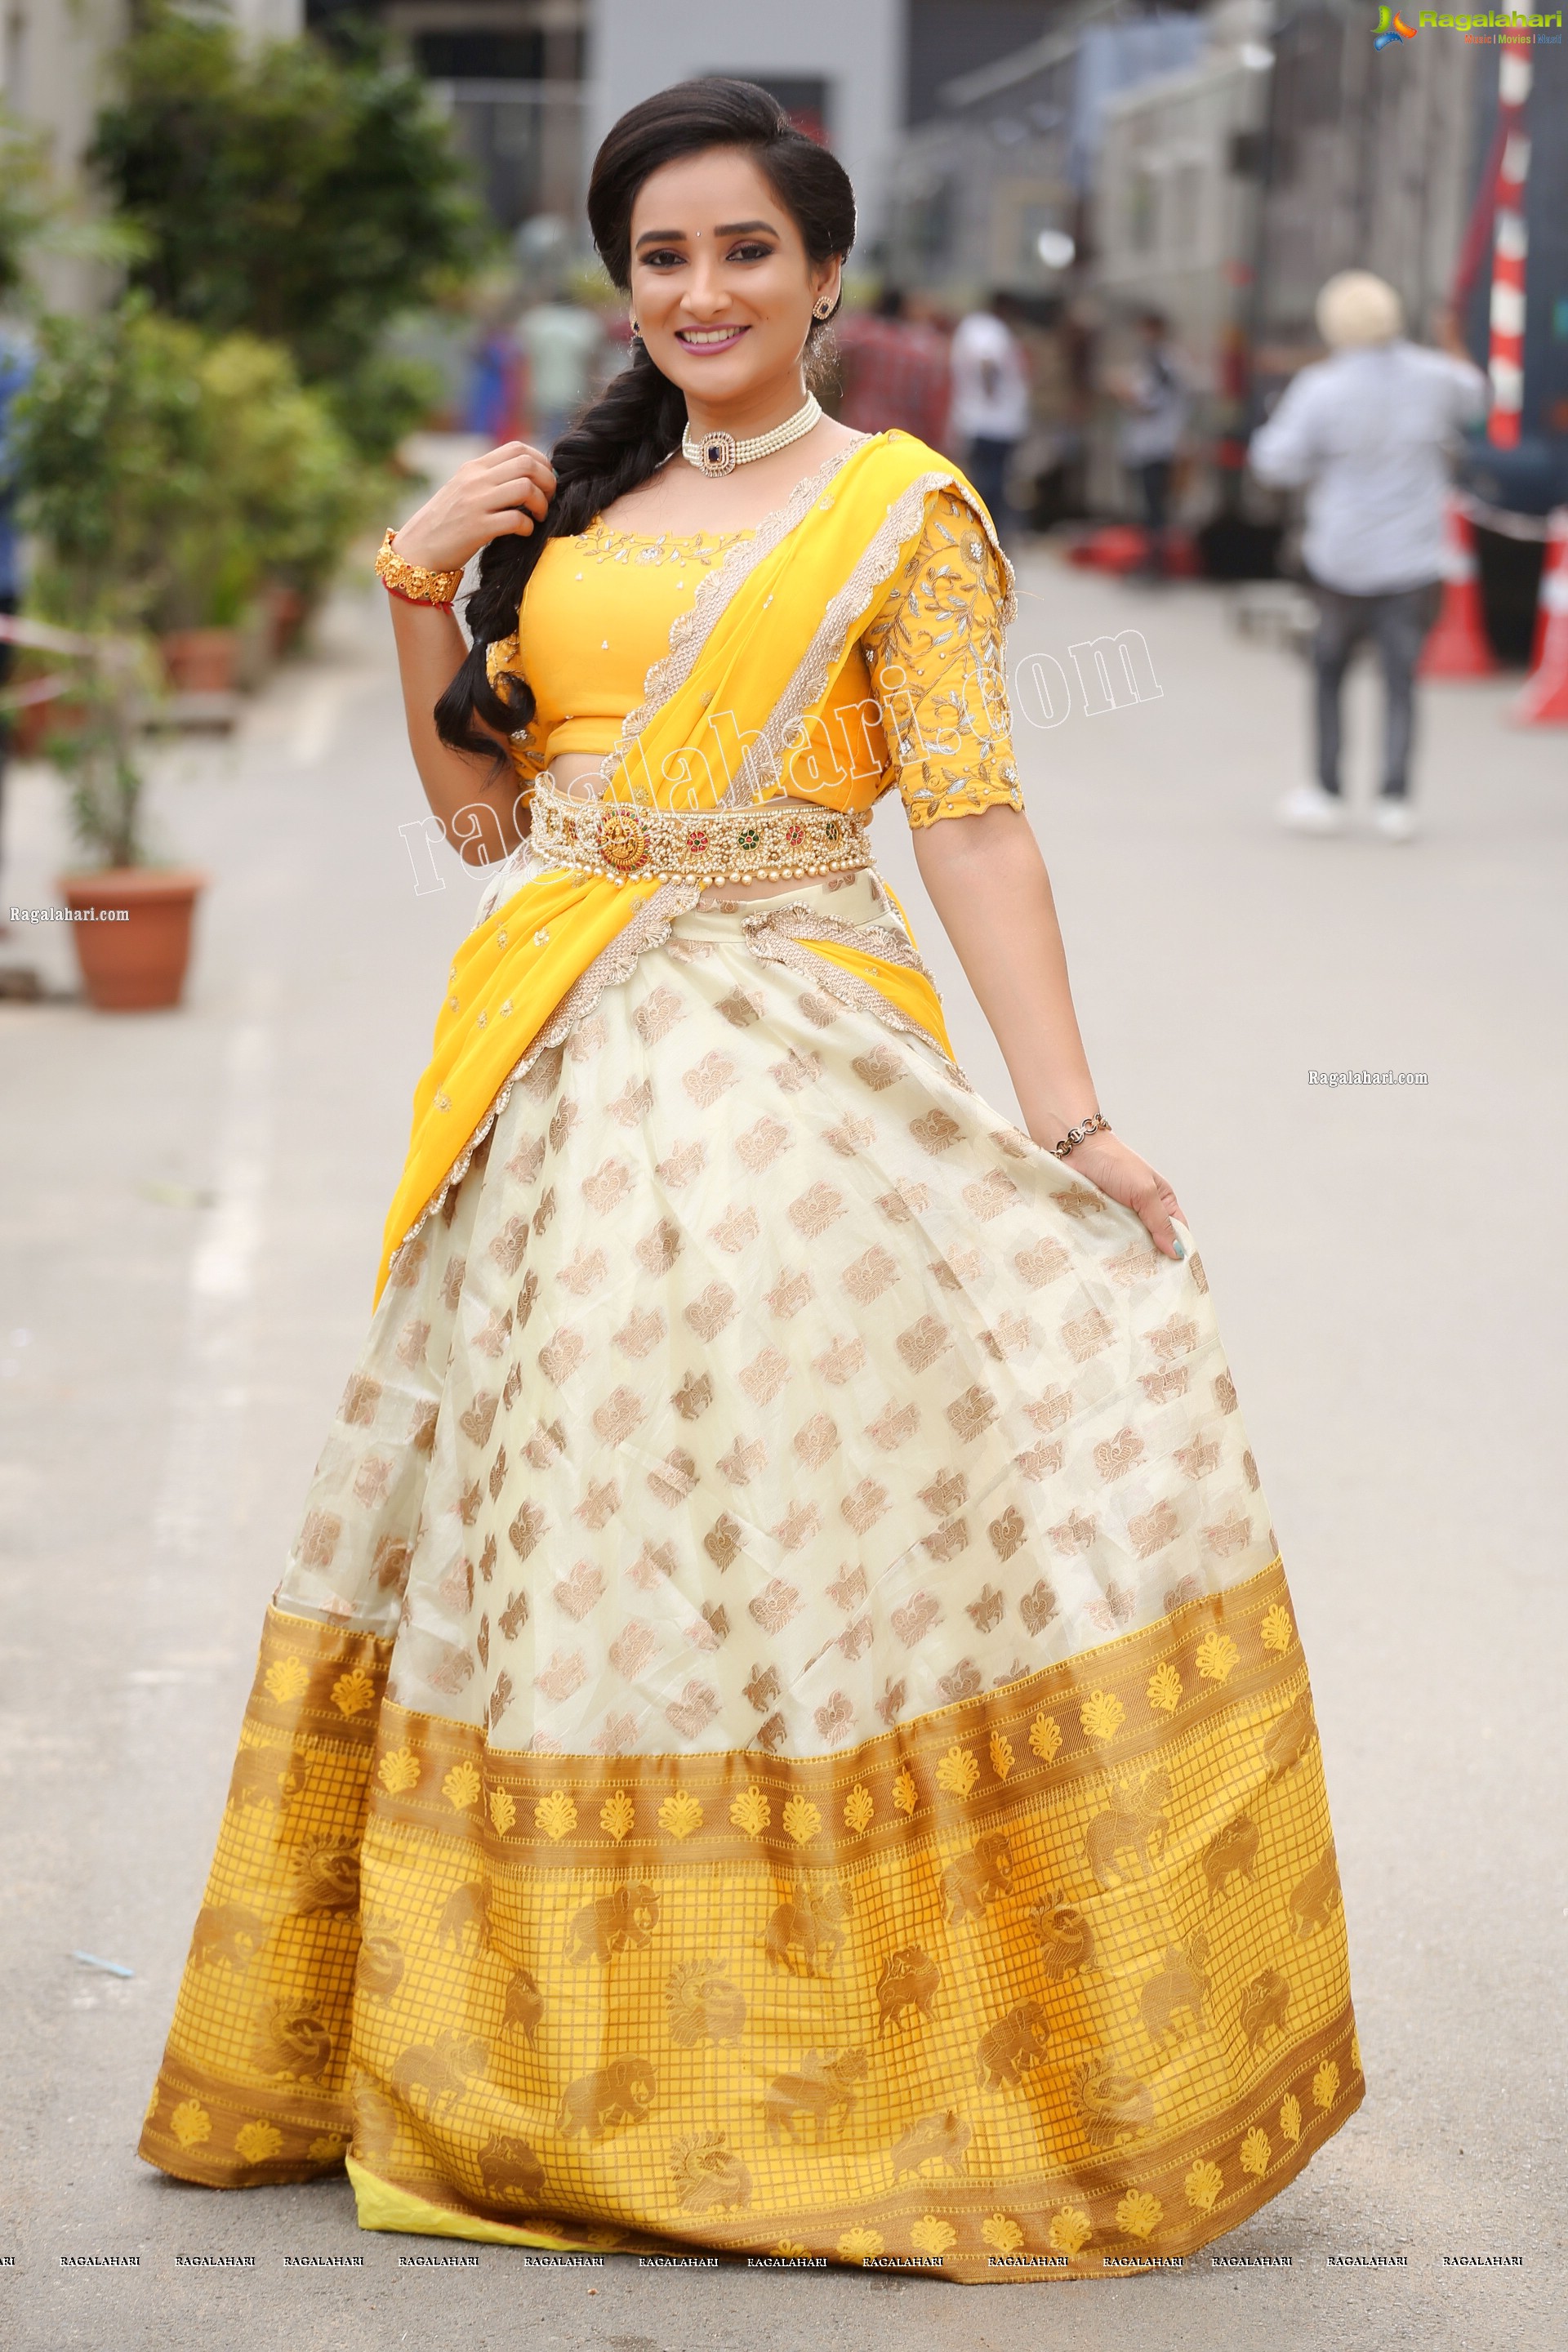 Madhu Krishnan in Cream and Yellow Lehenga Choli, Exclusive Photoshoot